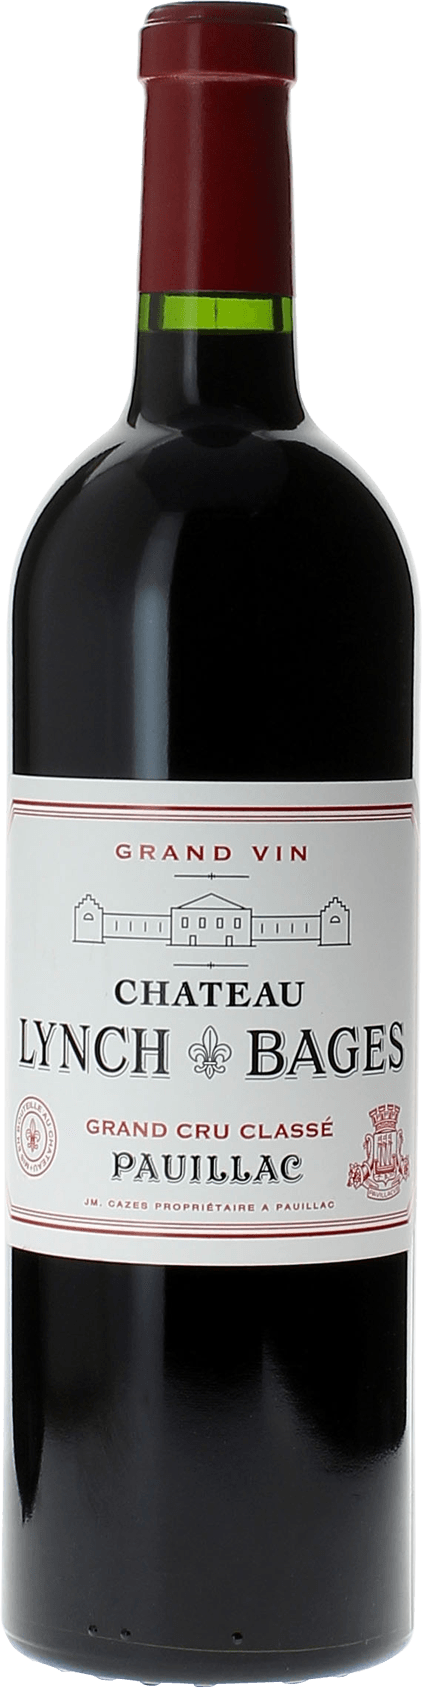 Lynch bages 1975 5 me Grand cru class Pauillac, Bordeaux rouge